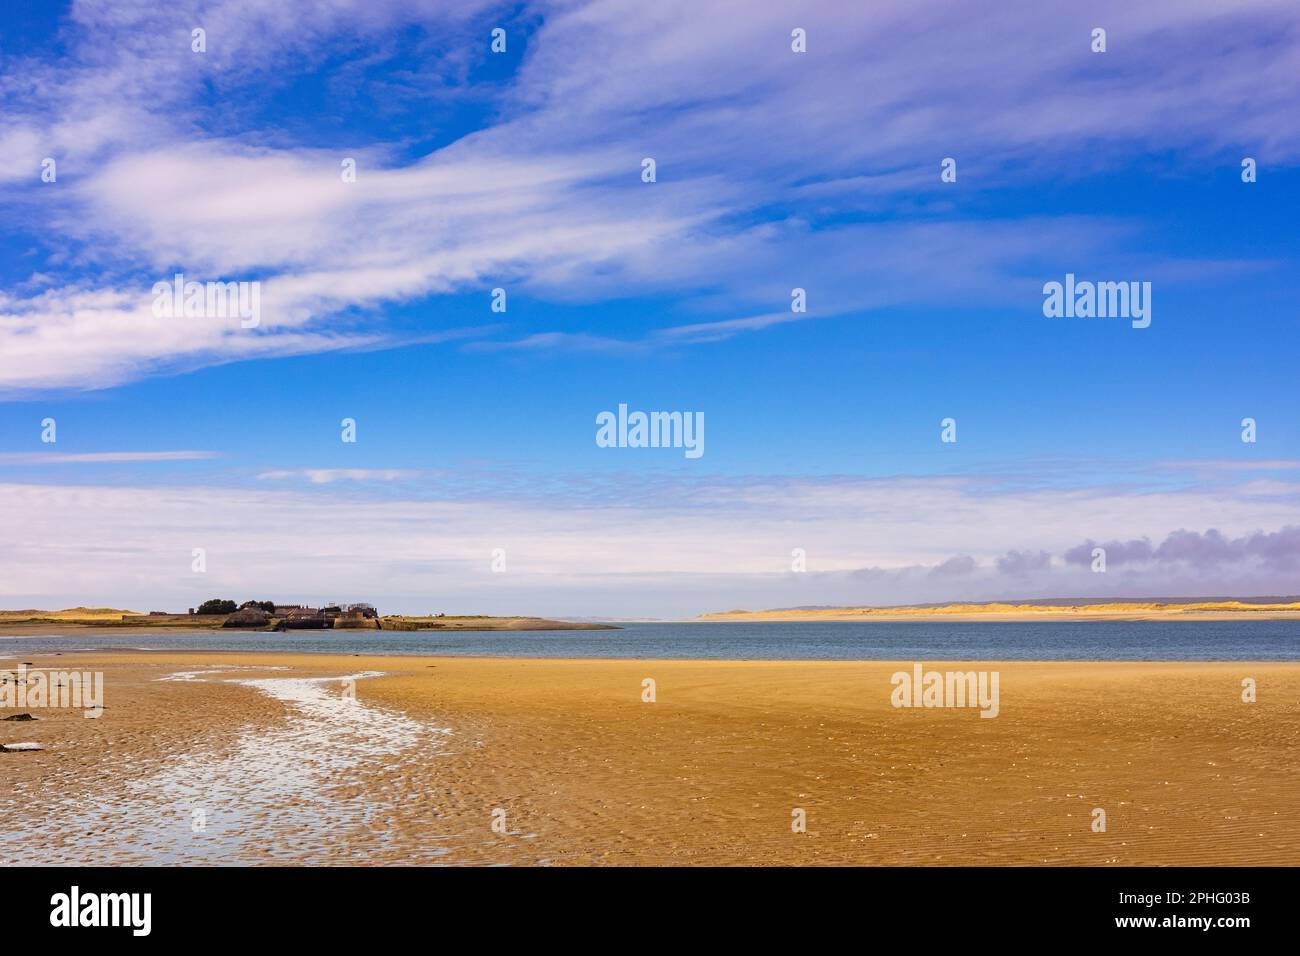 Vista sulla sabbia di Fort Belan con la spiaggia di Newborough su Anglesey attraverso lo stretto di Menai. Dinas Dinlle, Caernarfon, Gwynedd, Galles settentrionale, Regno Unito, Regno Unito Foto Stock